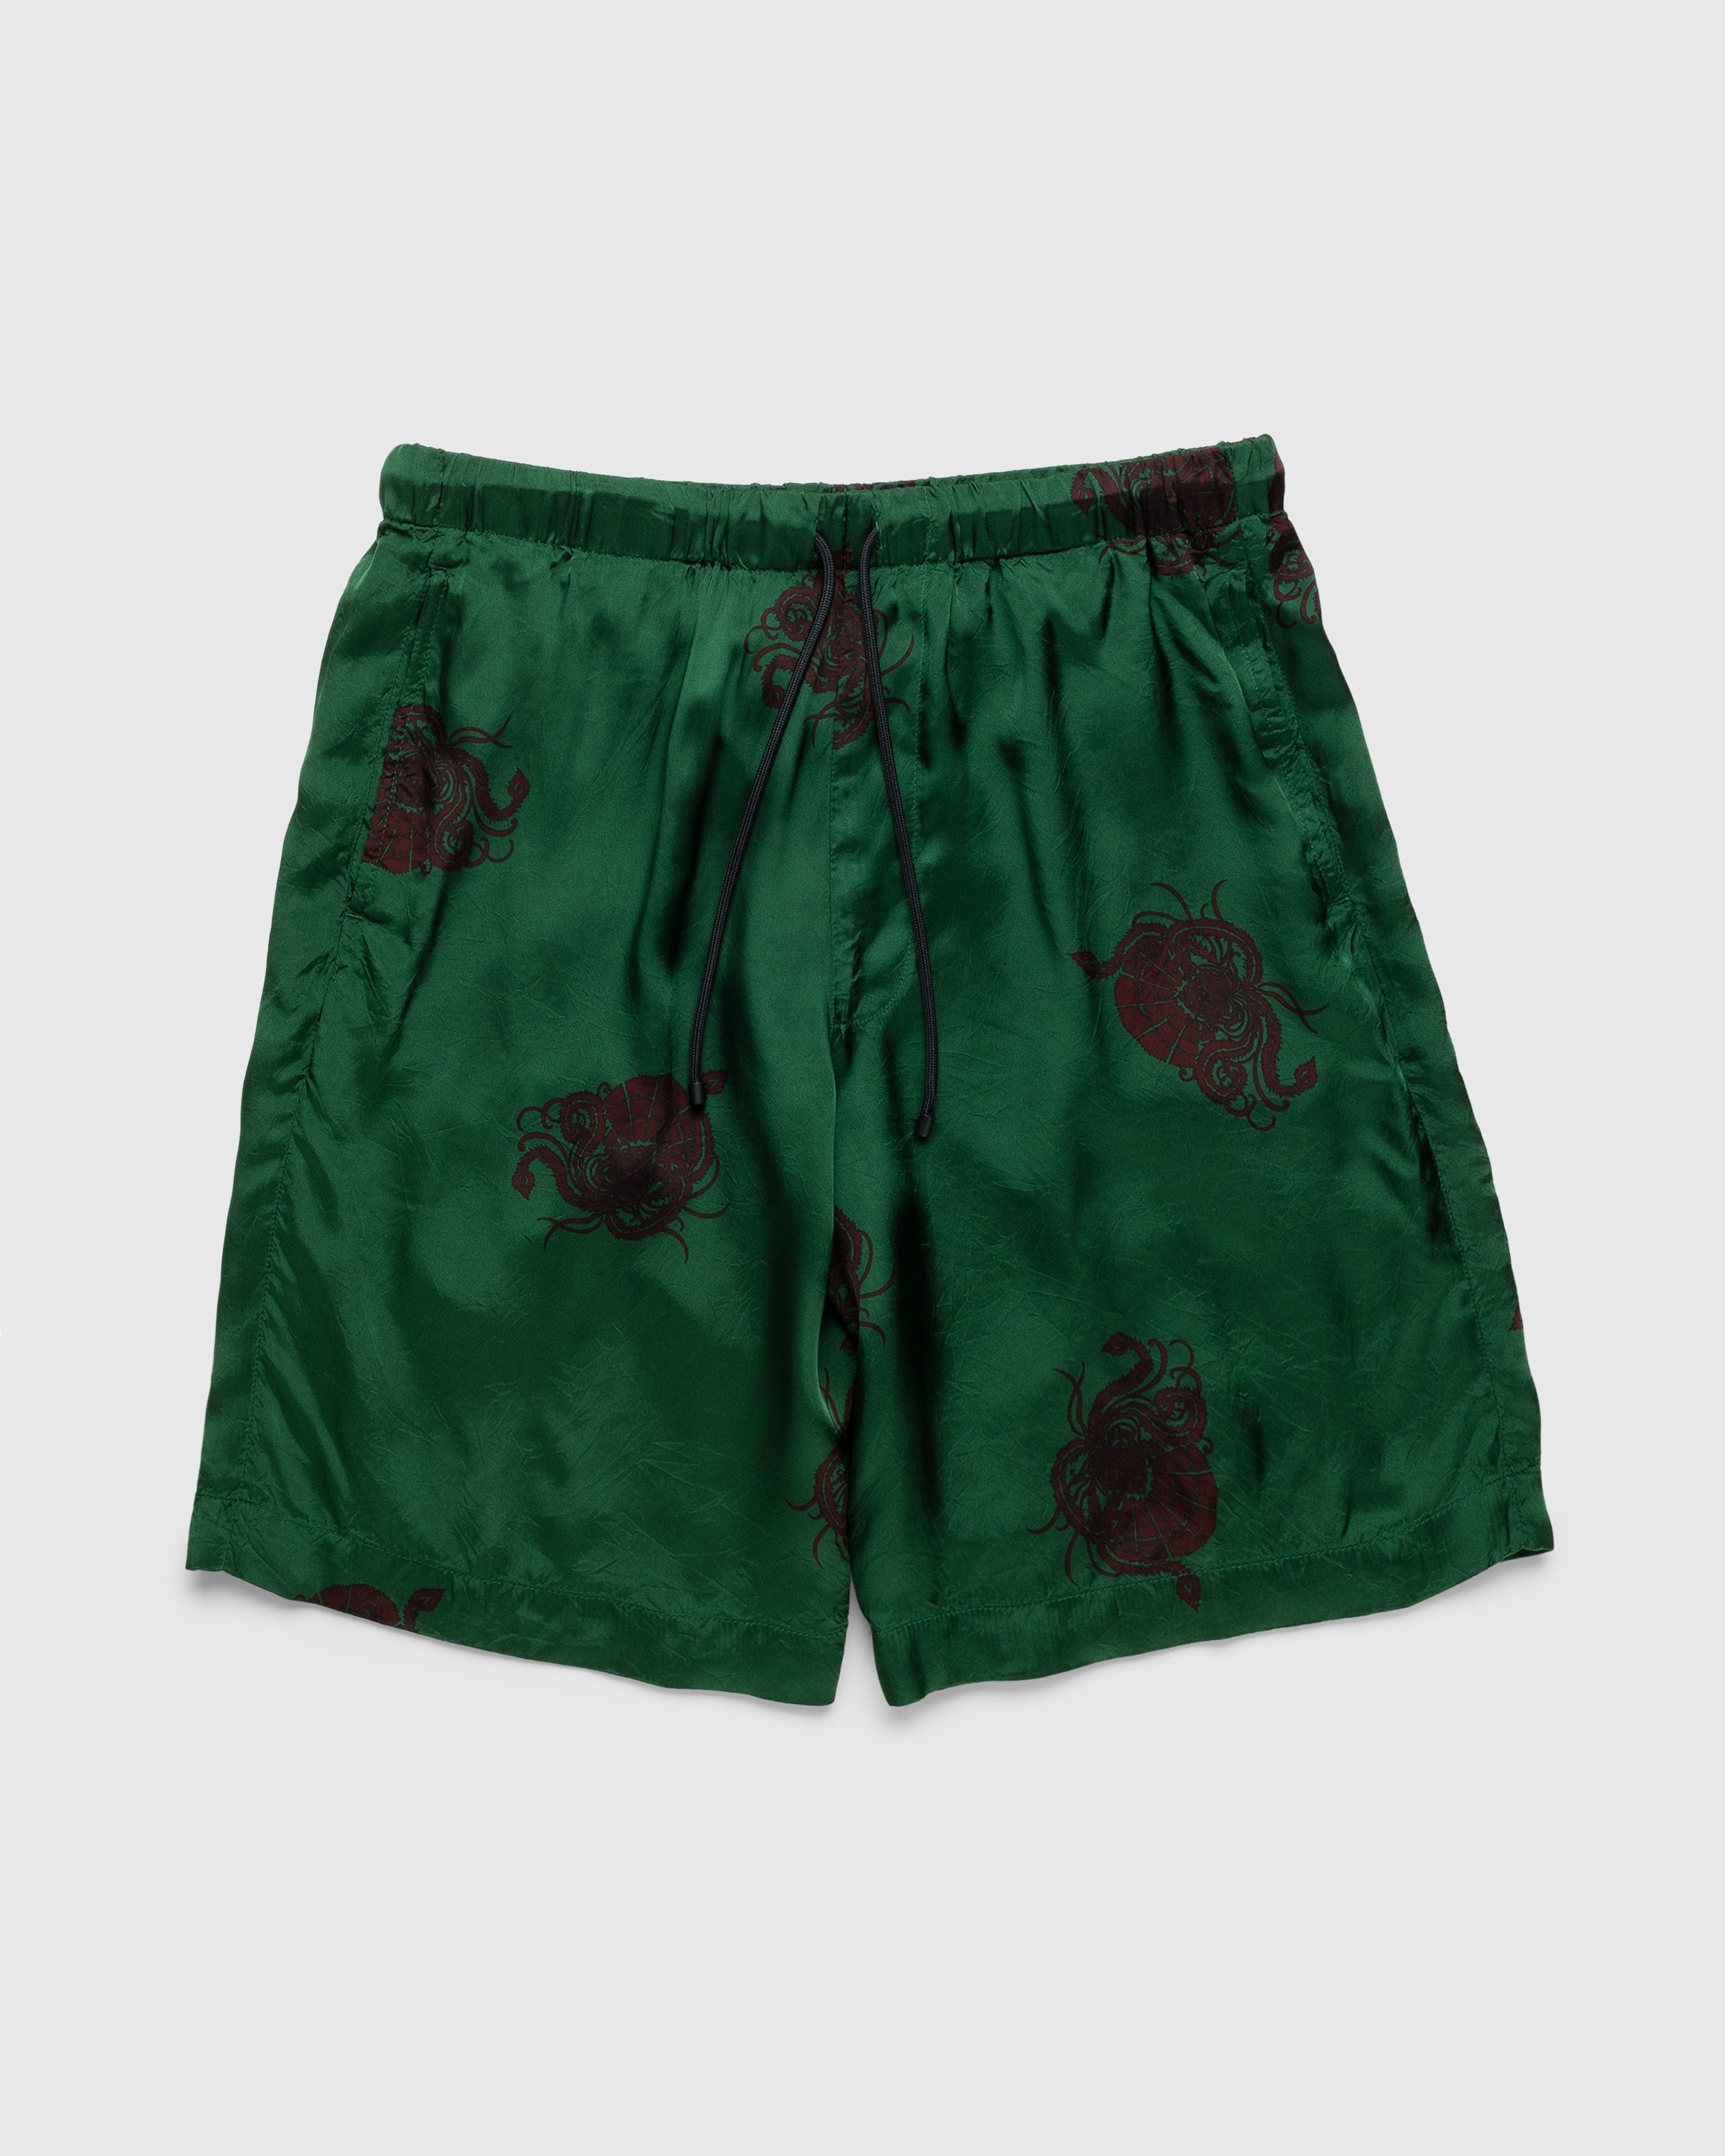 Dries van Noten – Piperi Shorts Green - Shorts - Green - Image 1